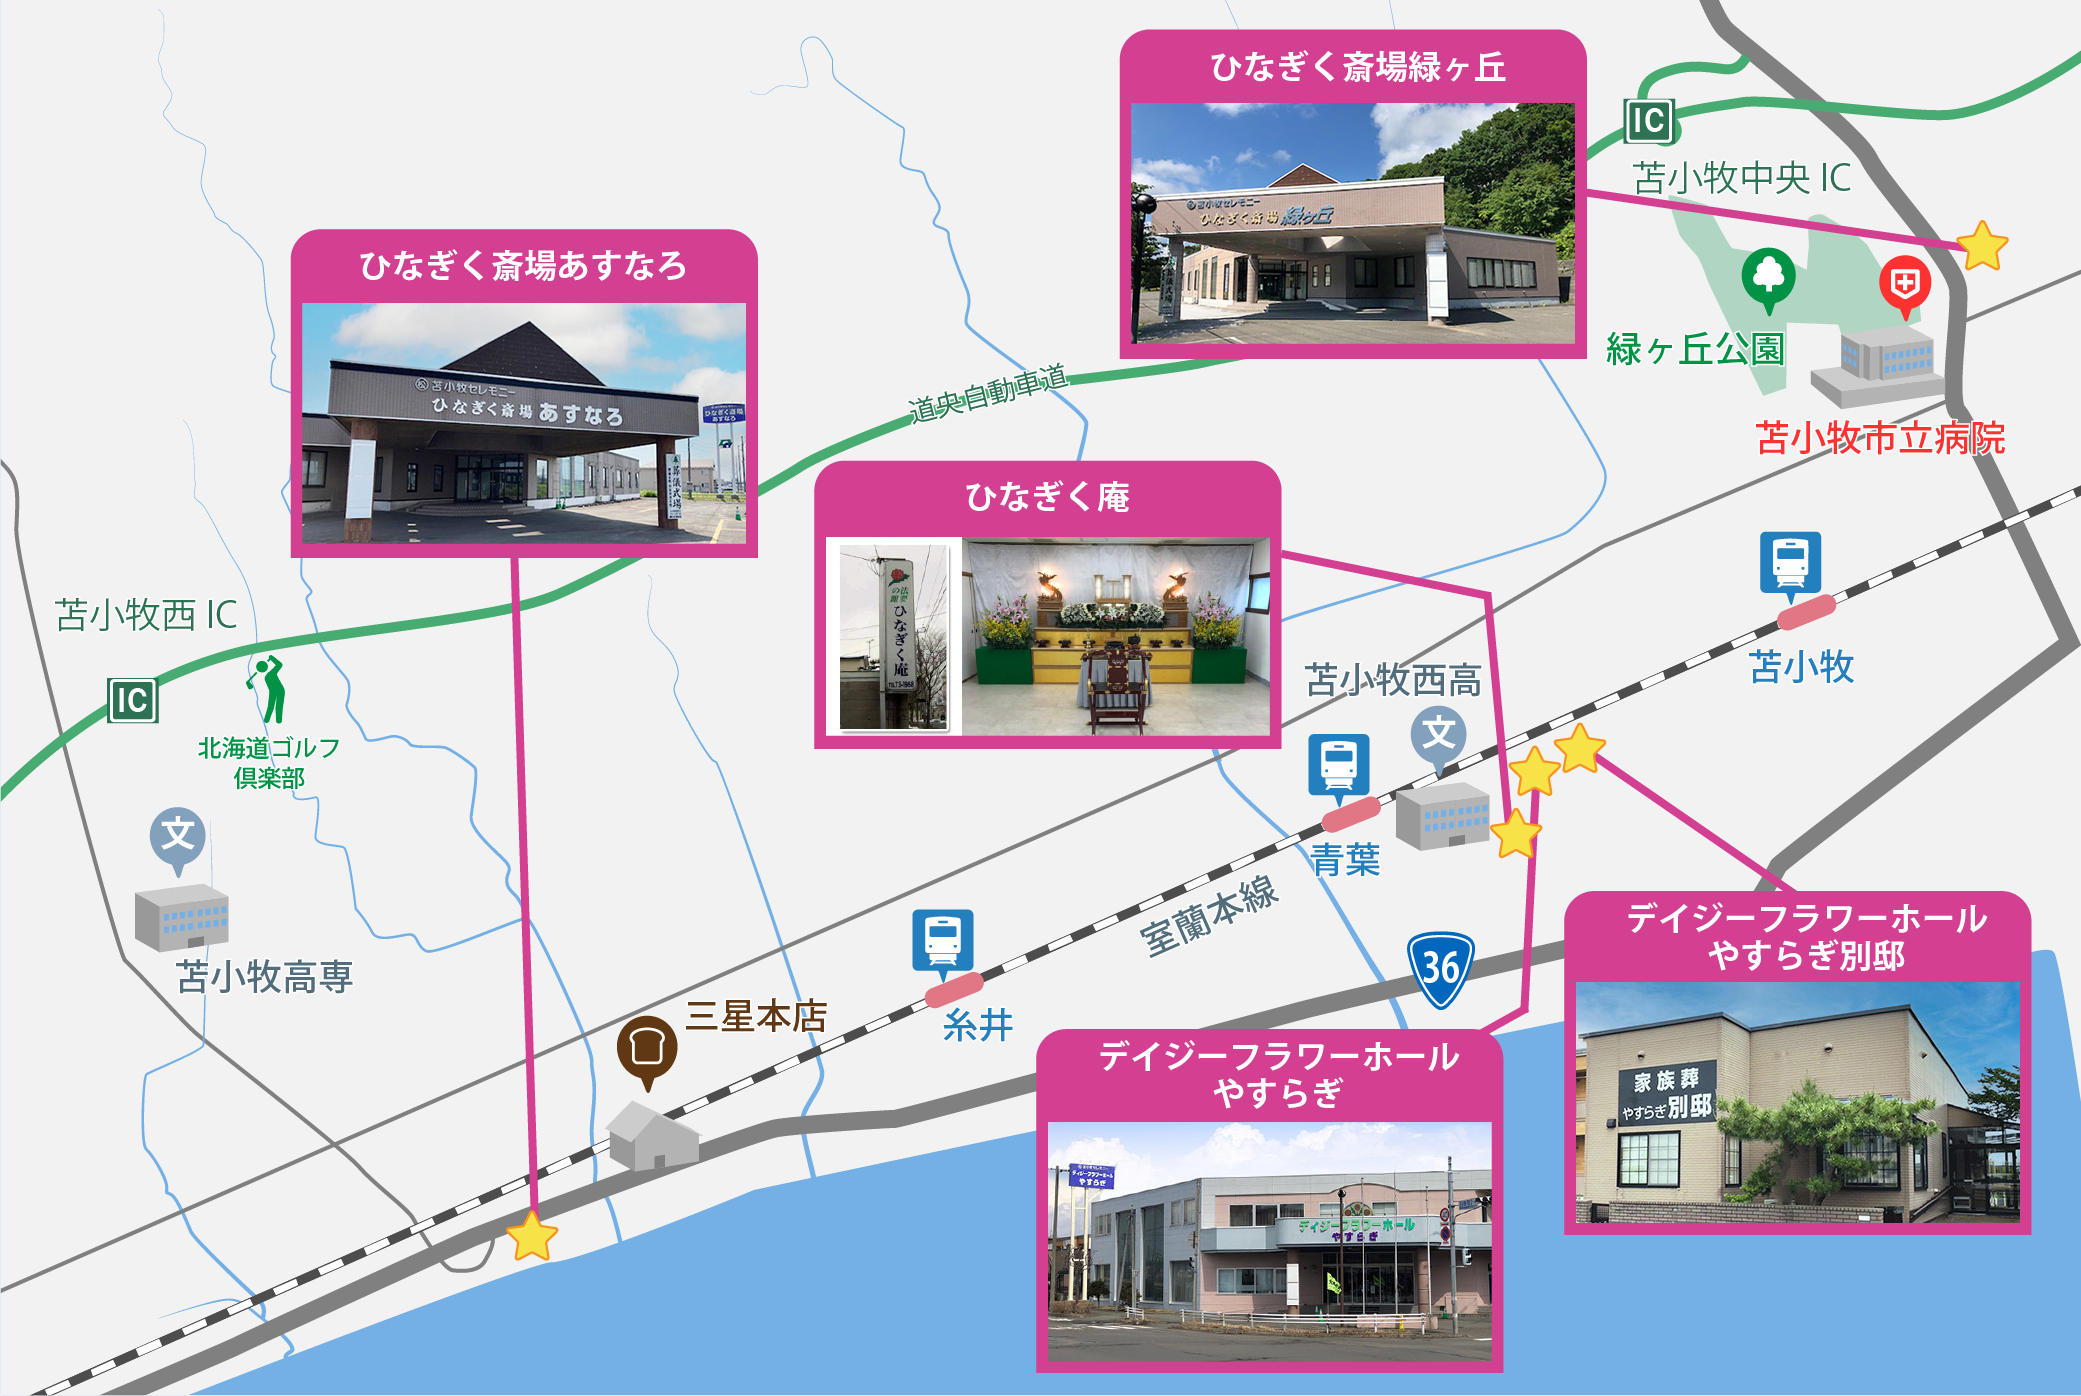 5斎場イラストマップ